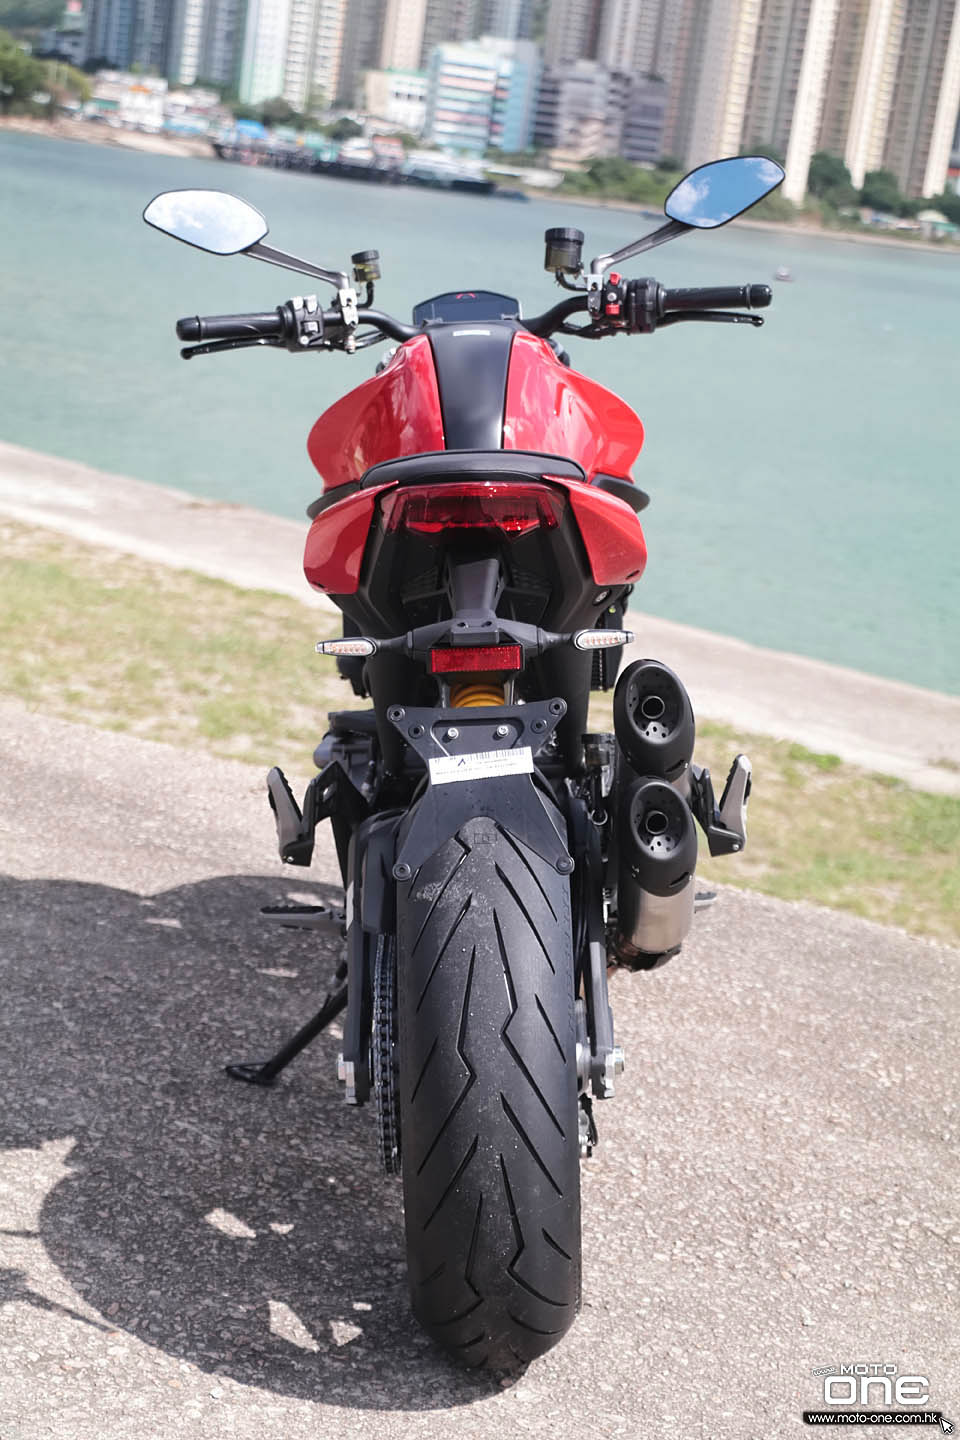 2021 Ducati Monster 937